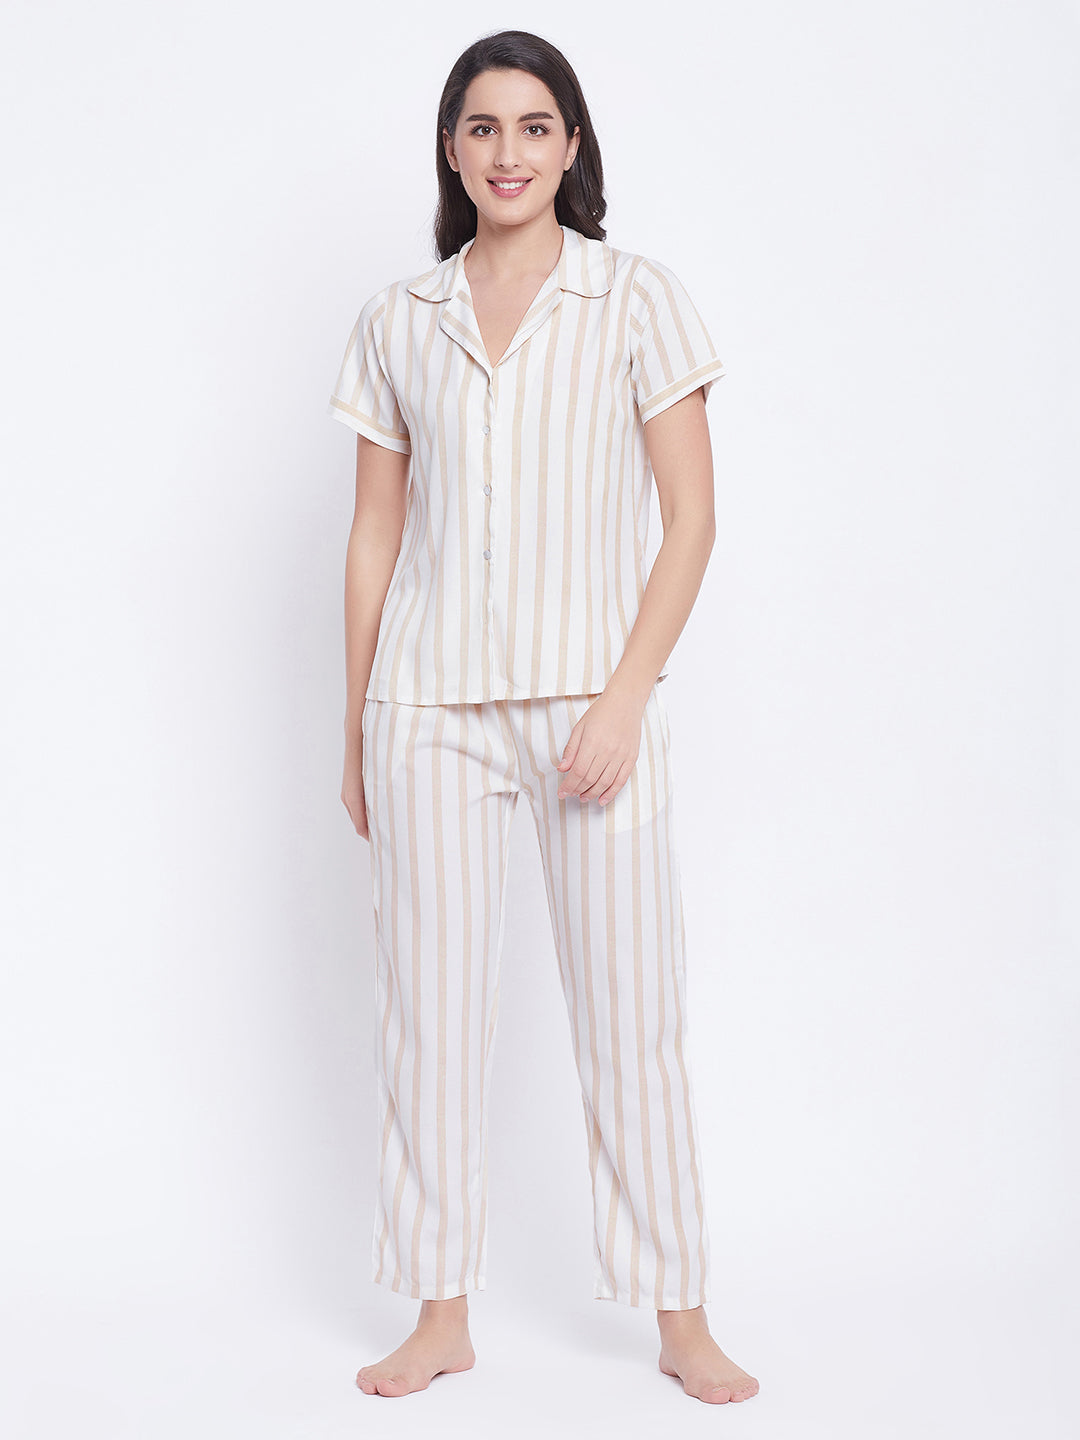 Sassy-Stripes-Shirt-&-Pyjama-Set-In-White